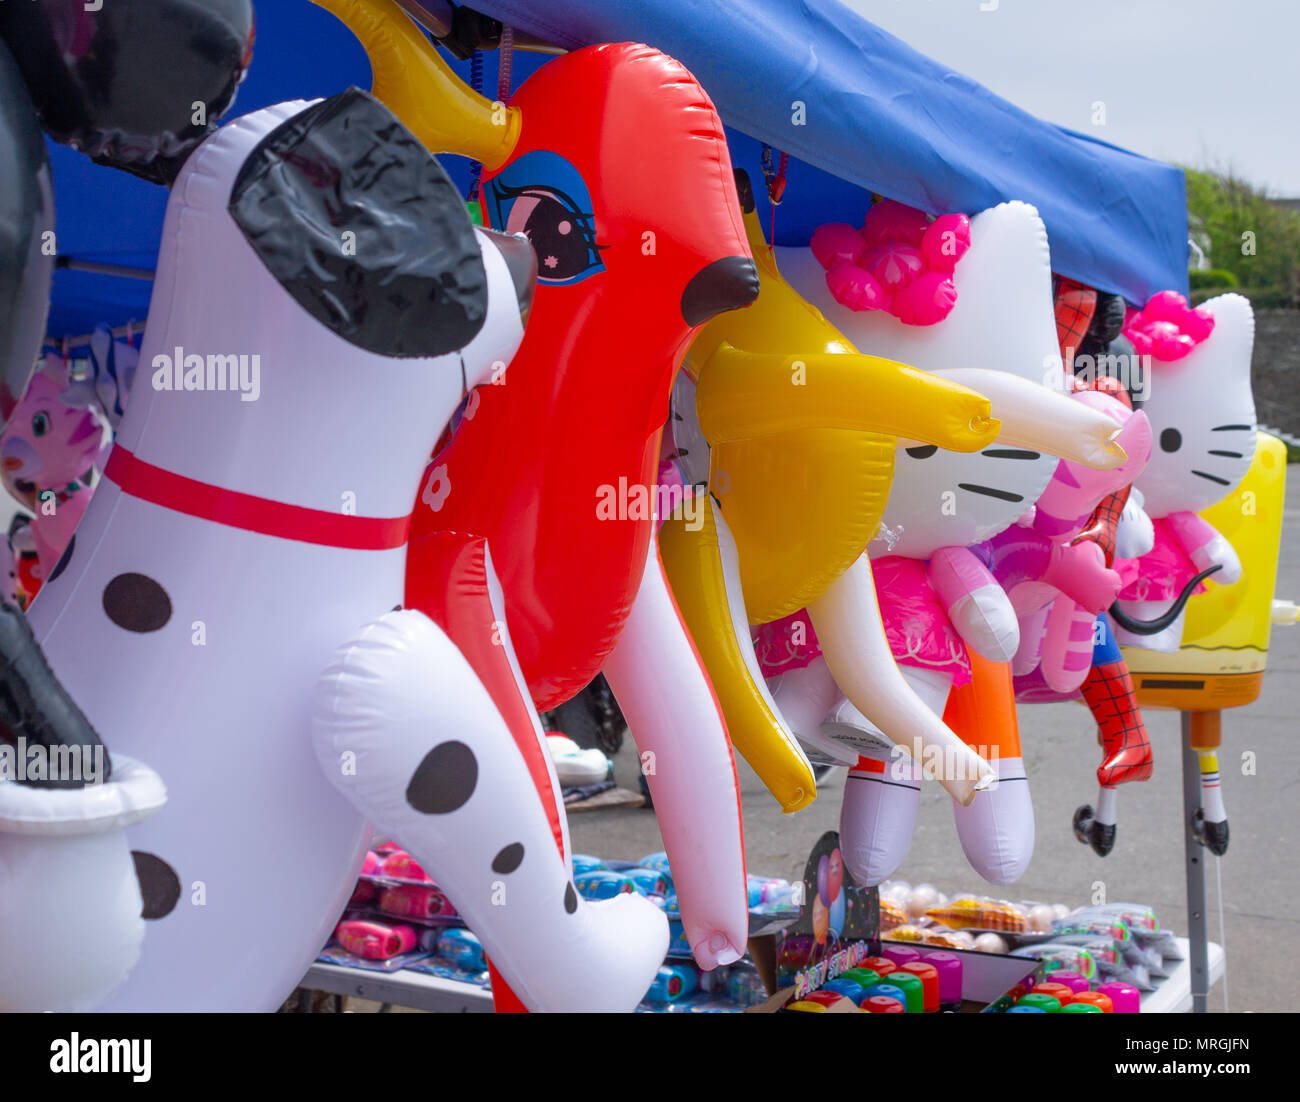 Jouets gonflables suspendus à un stand à une foire d'été. Banque D'Images